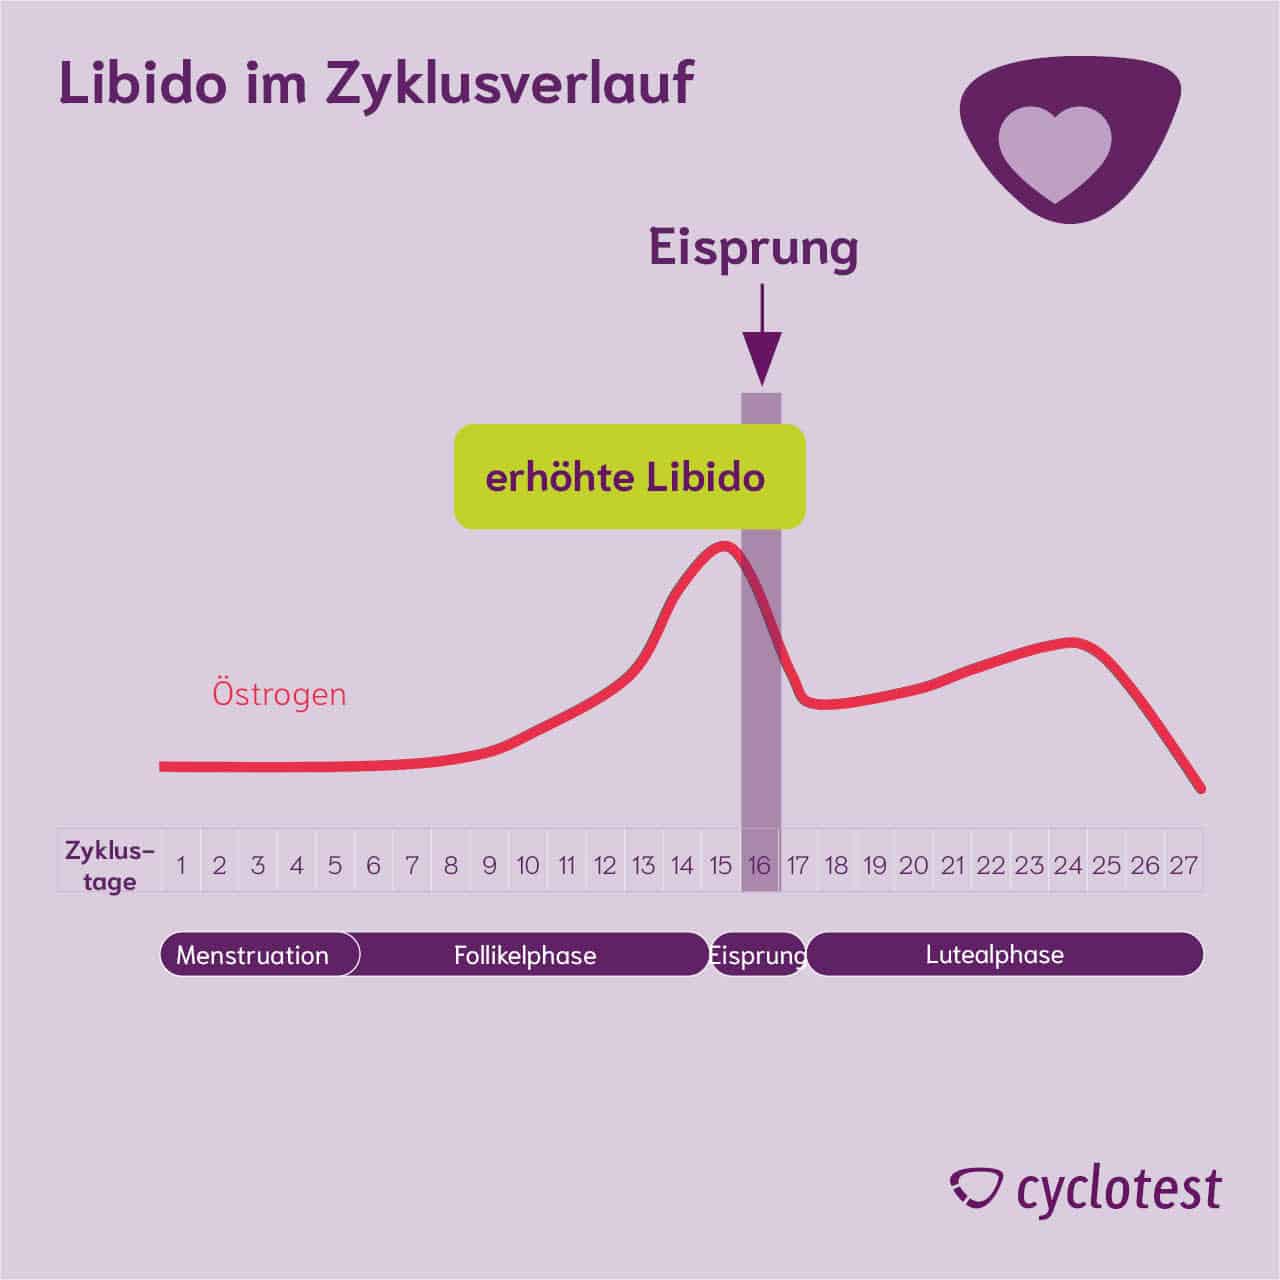 Zusammenhang Östrogenkonzentration und Libido